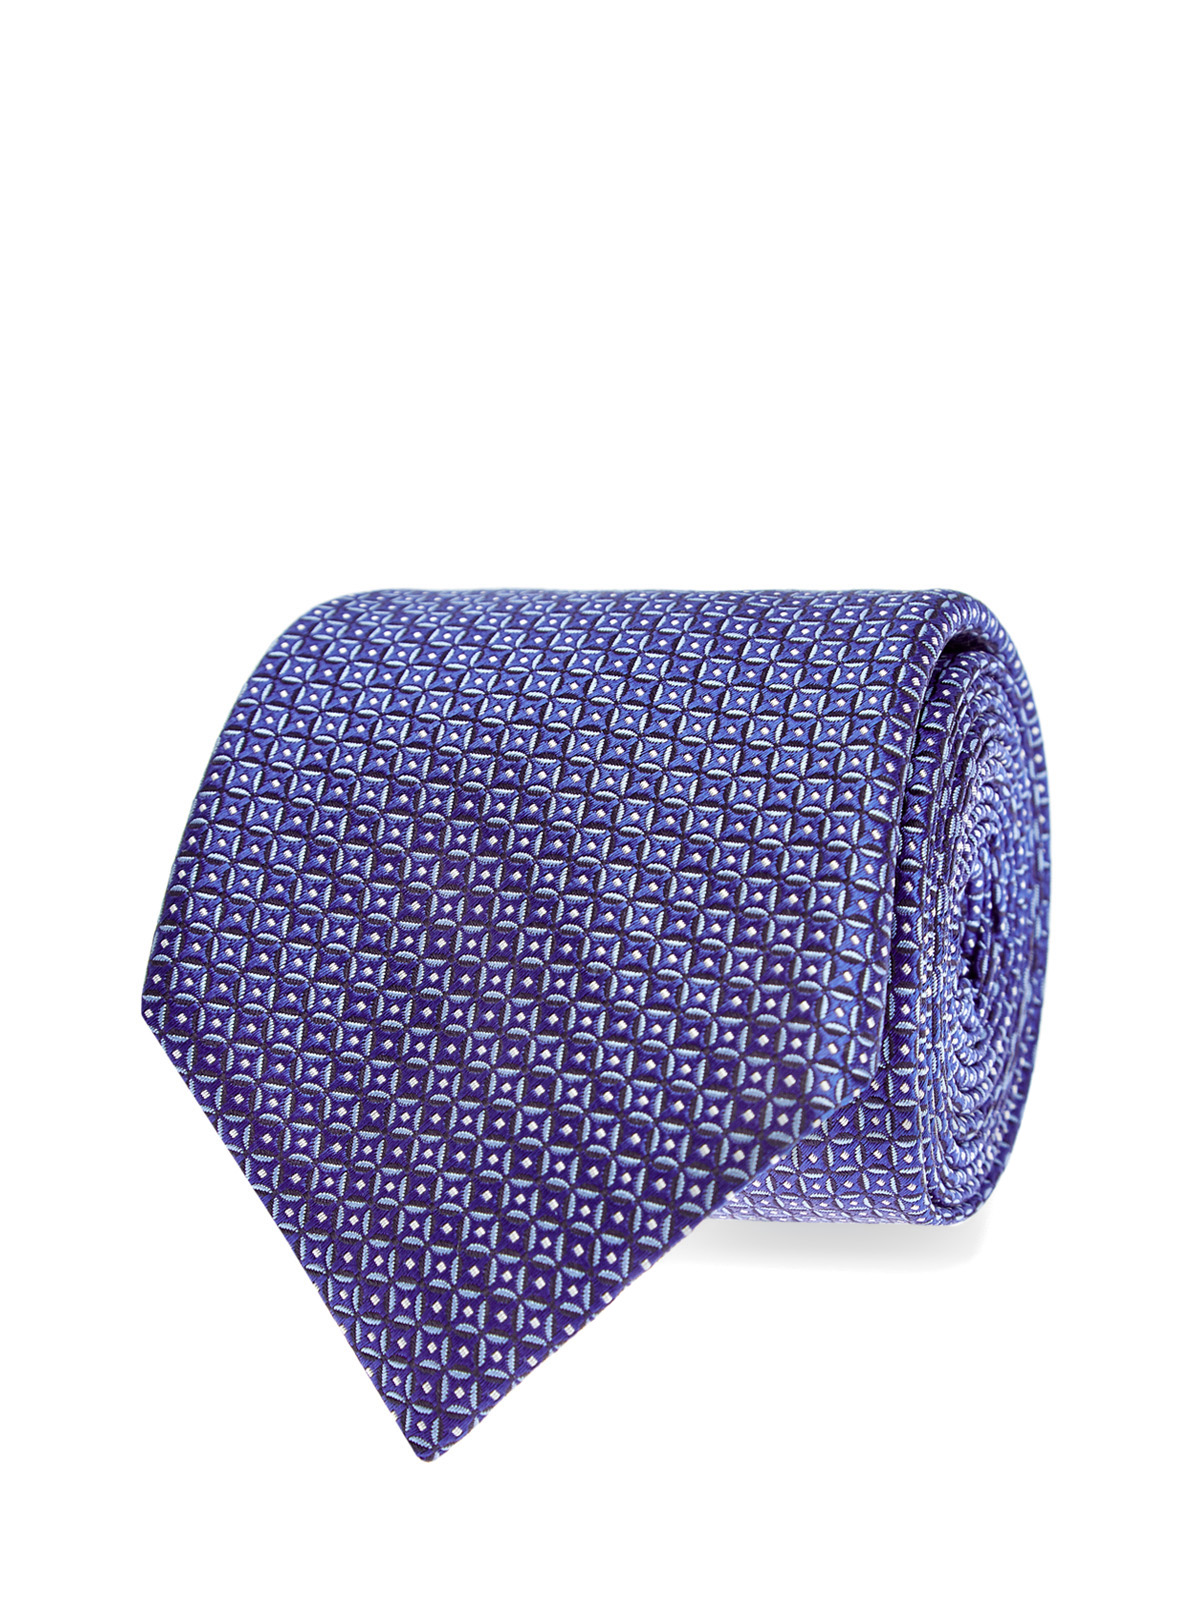 Шелковый галстук с текстурным вышитым принтом CANALI, цвет синий, размер 40;41.5;42;42.5;43.5;43;40.5